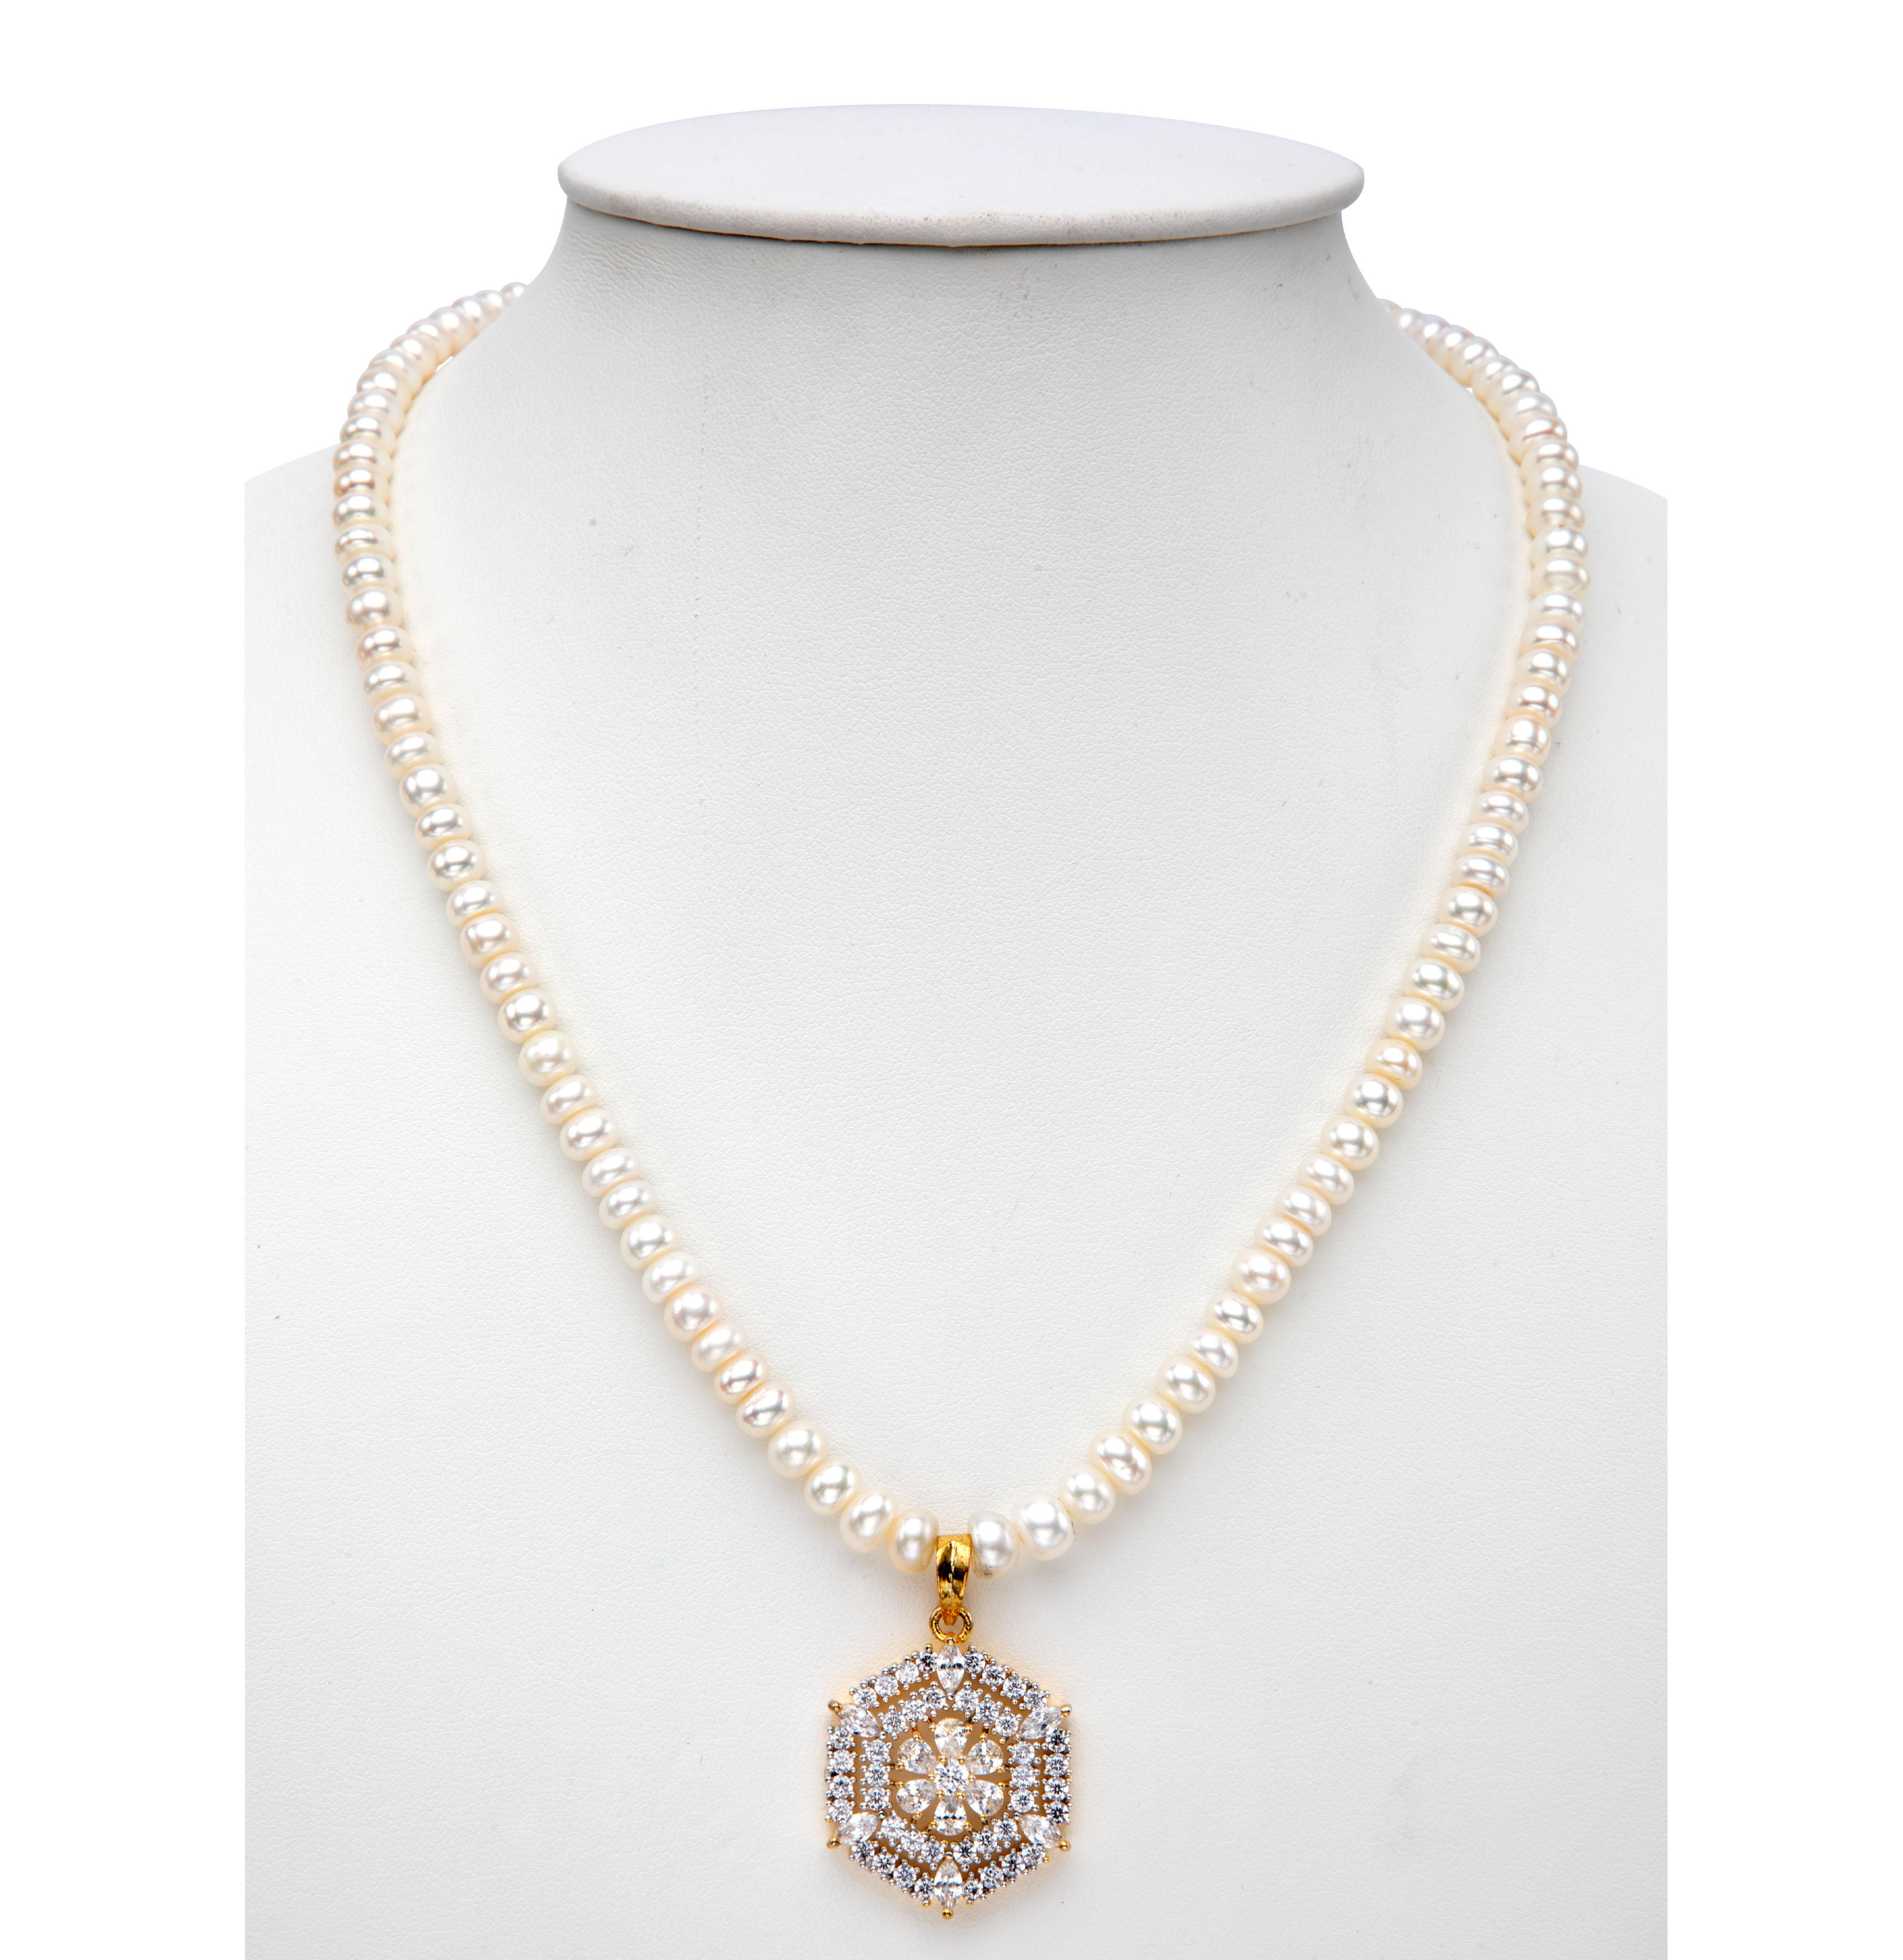 C Z Pearls Necklace Set | Mangatrai Pearls & Jewellers